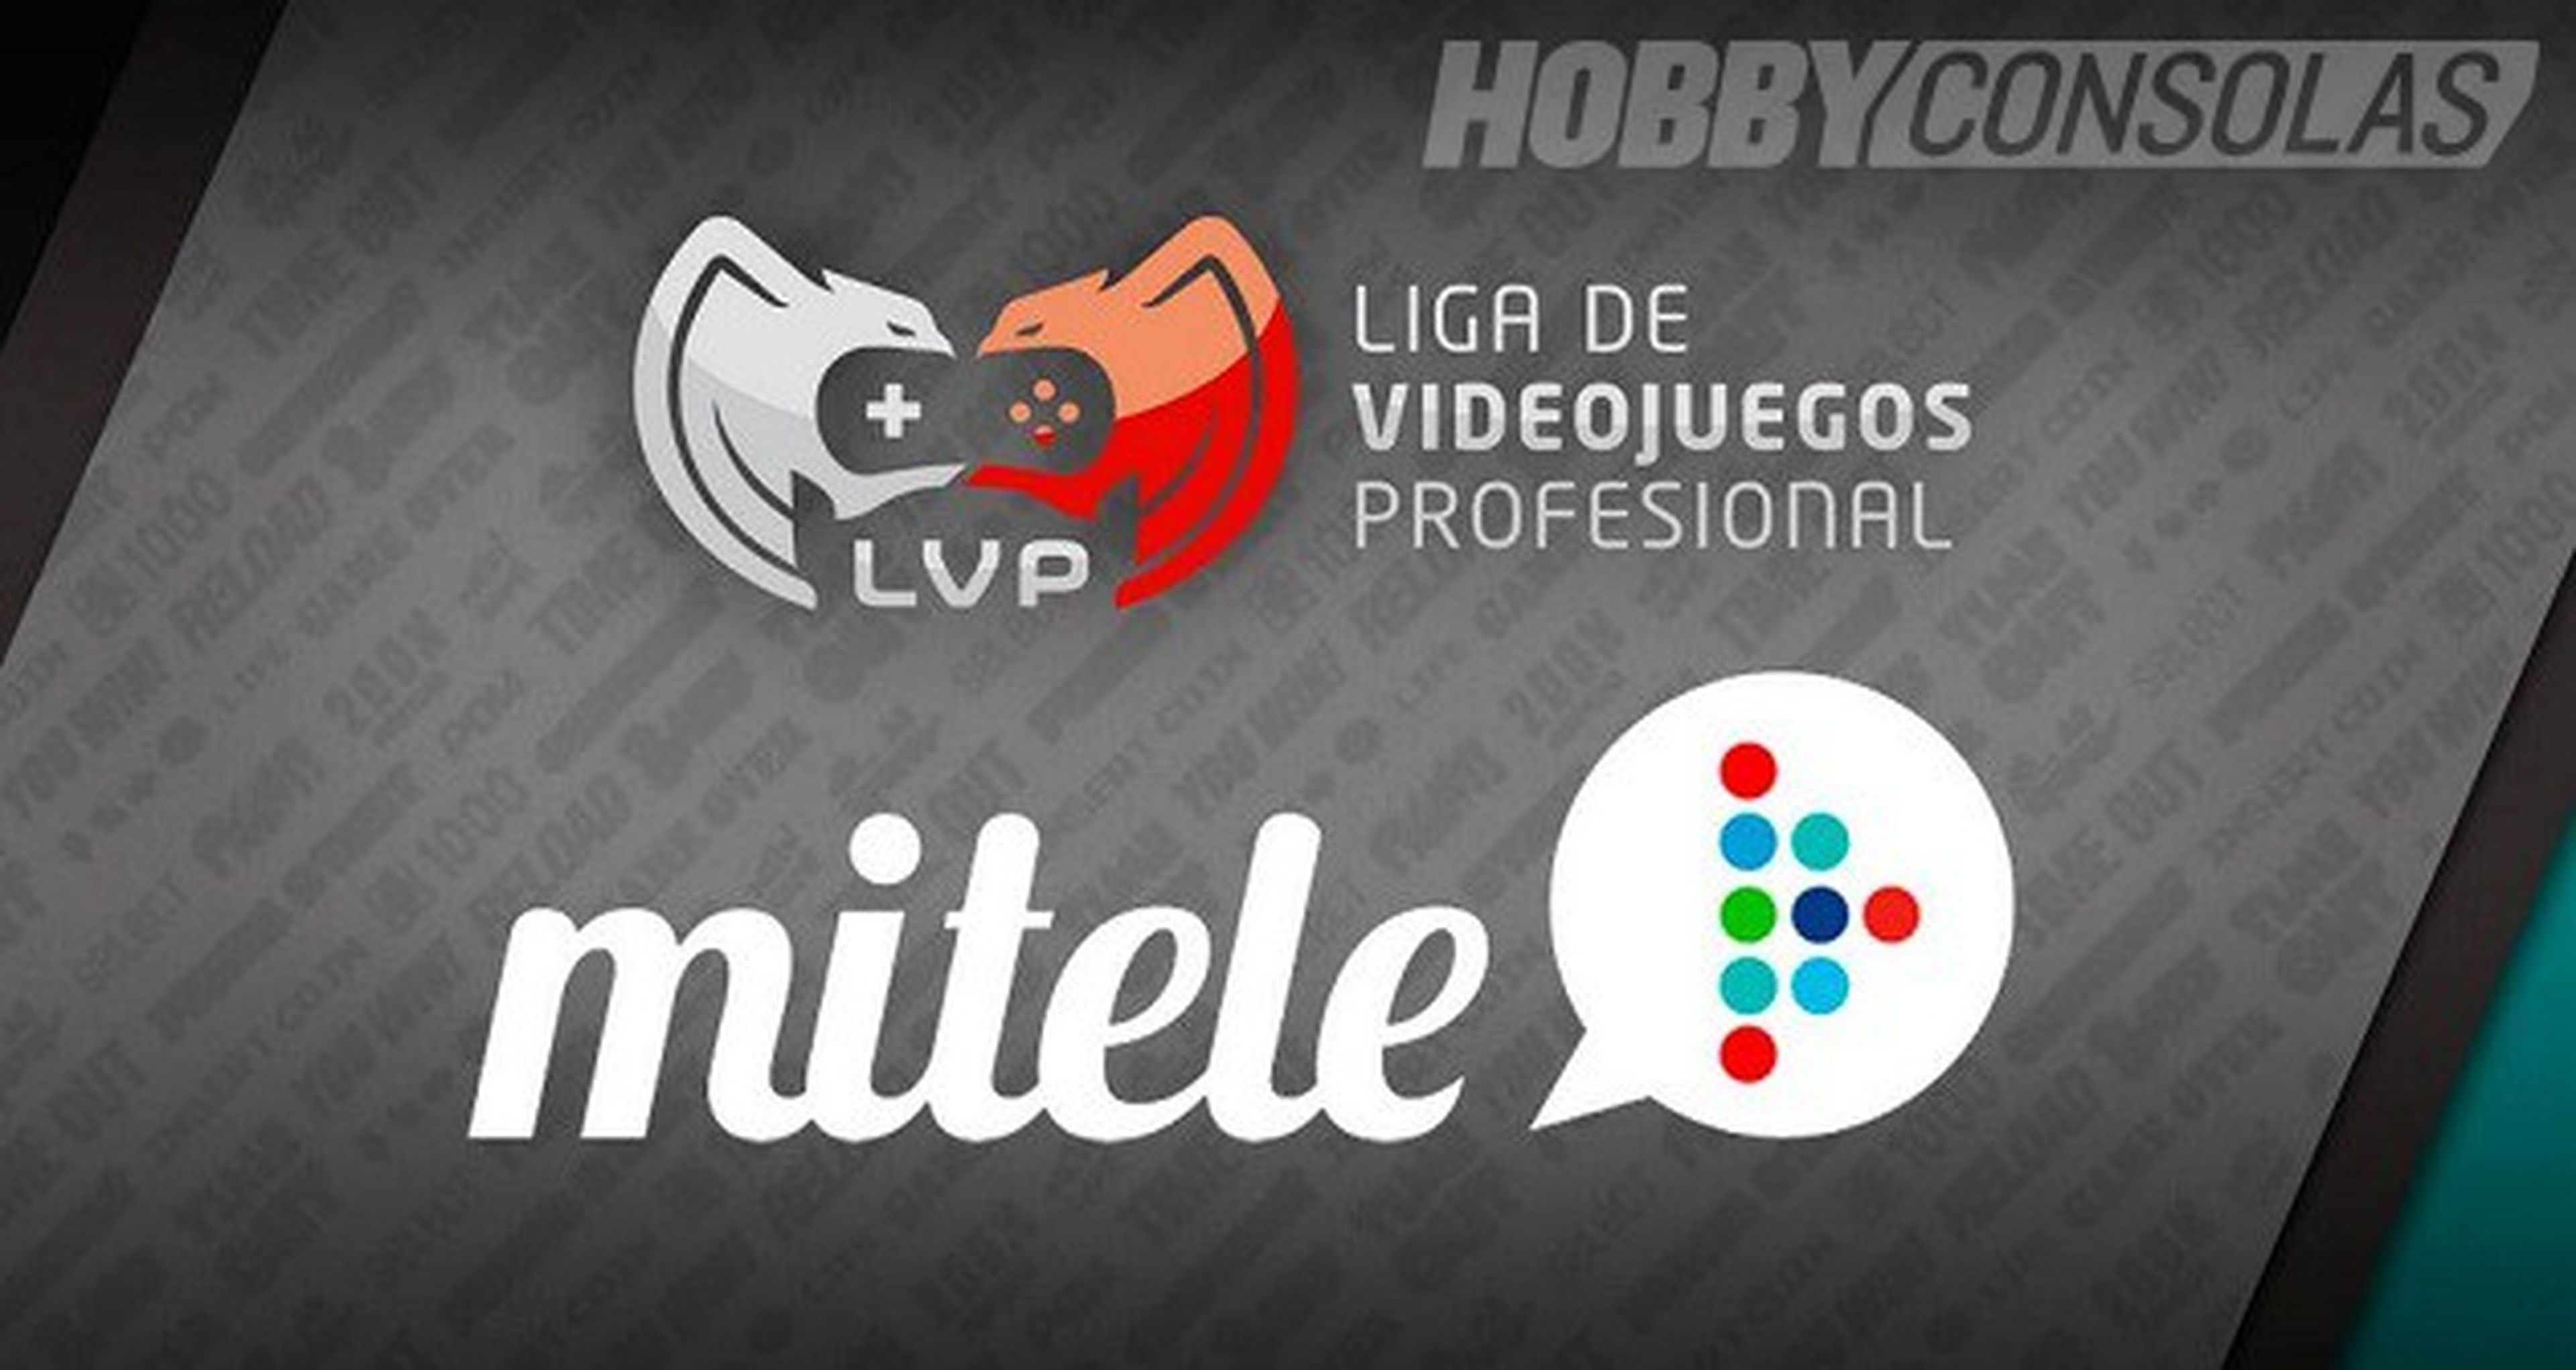 Los eSports de la LVP llegan a Mitele.es